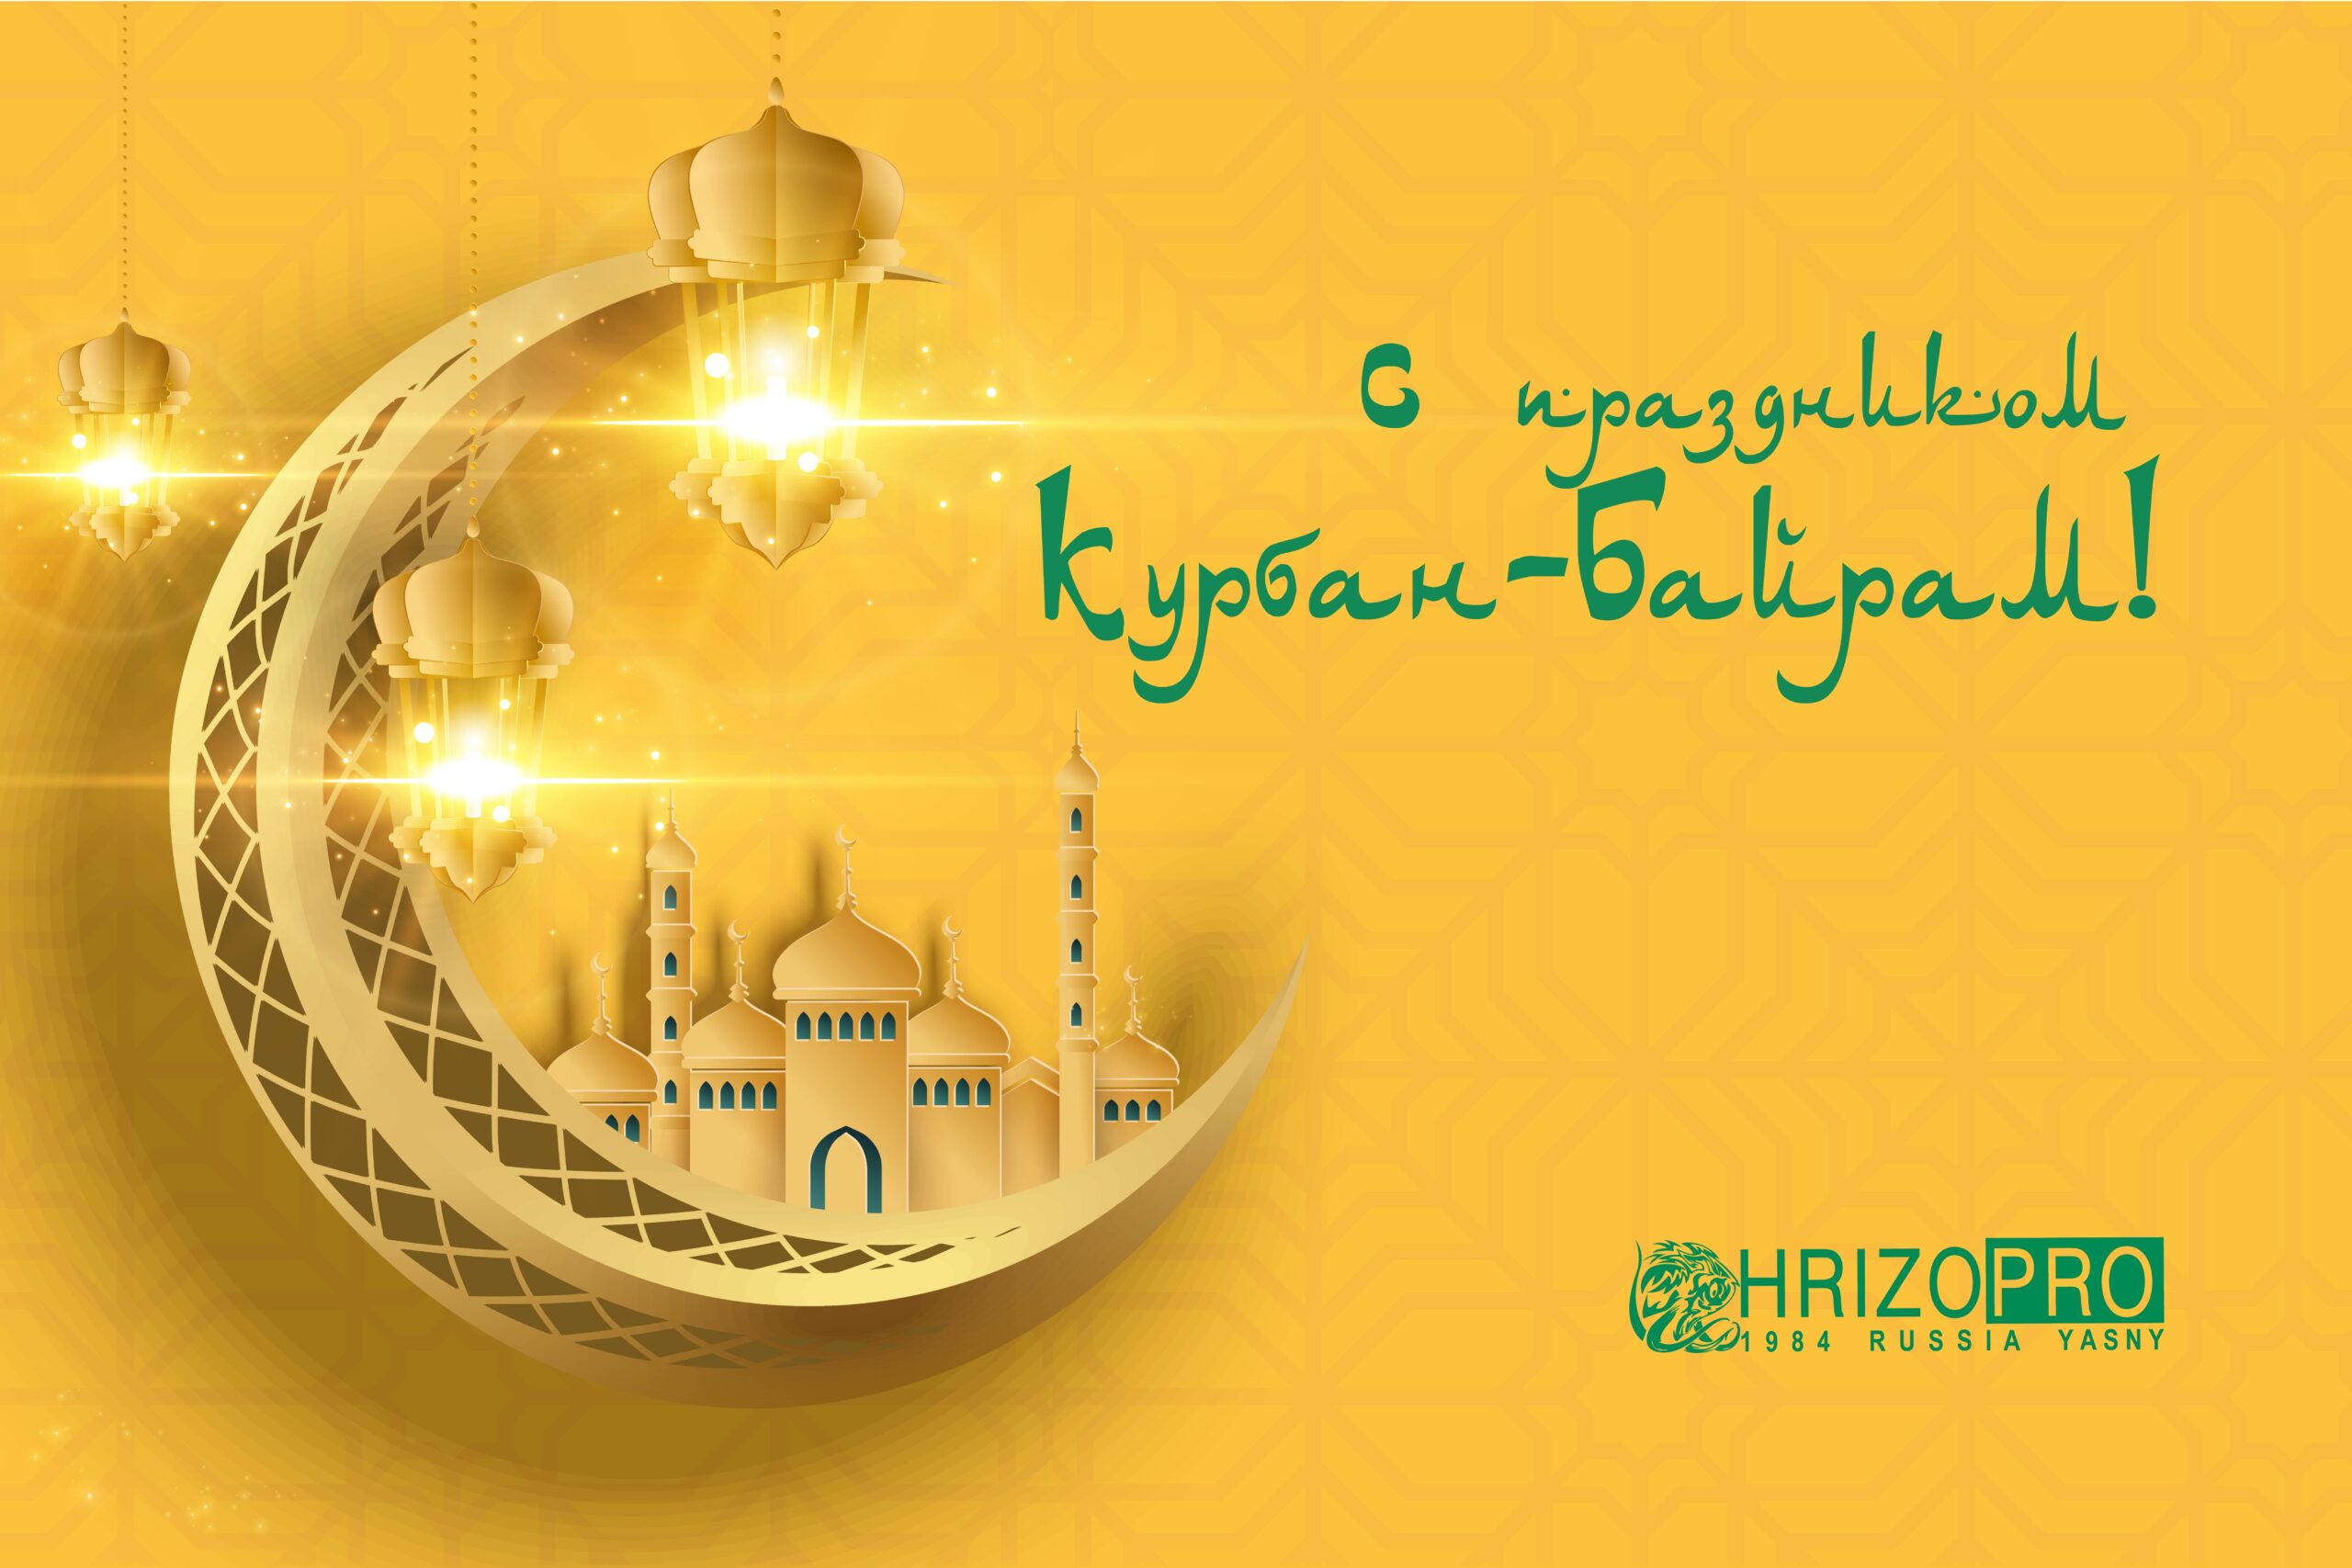 HRIZOPRO поздравляет с праздником Курбан-Байрам